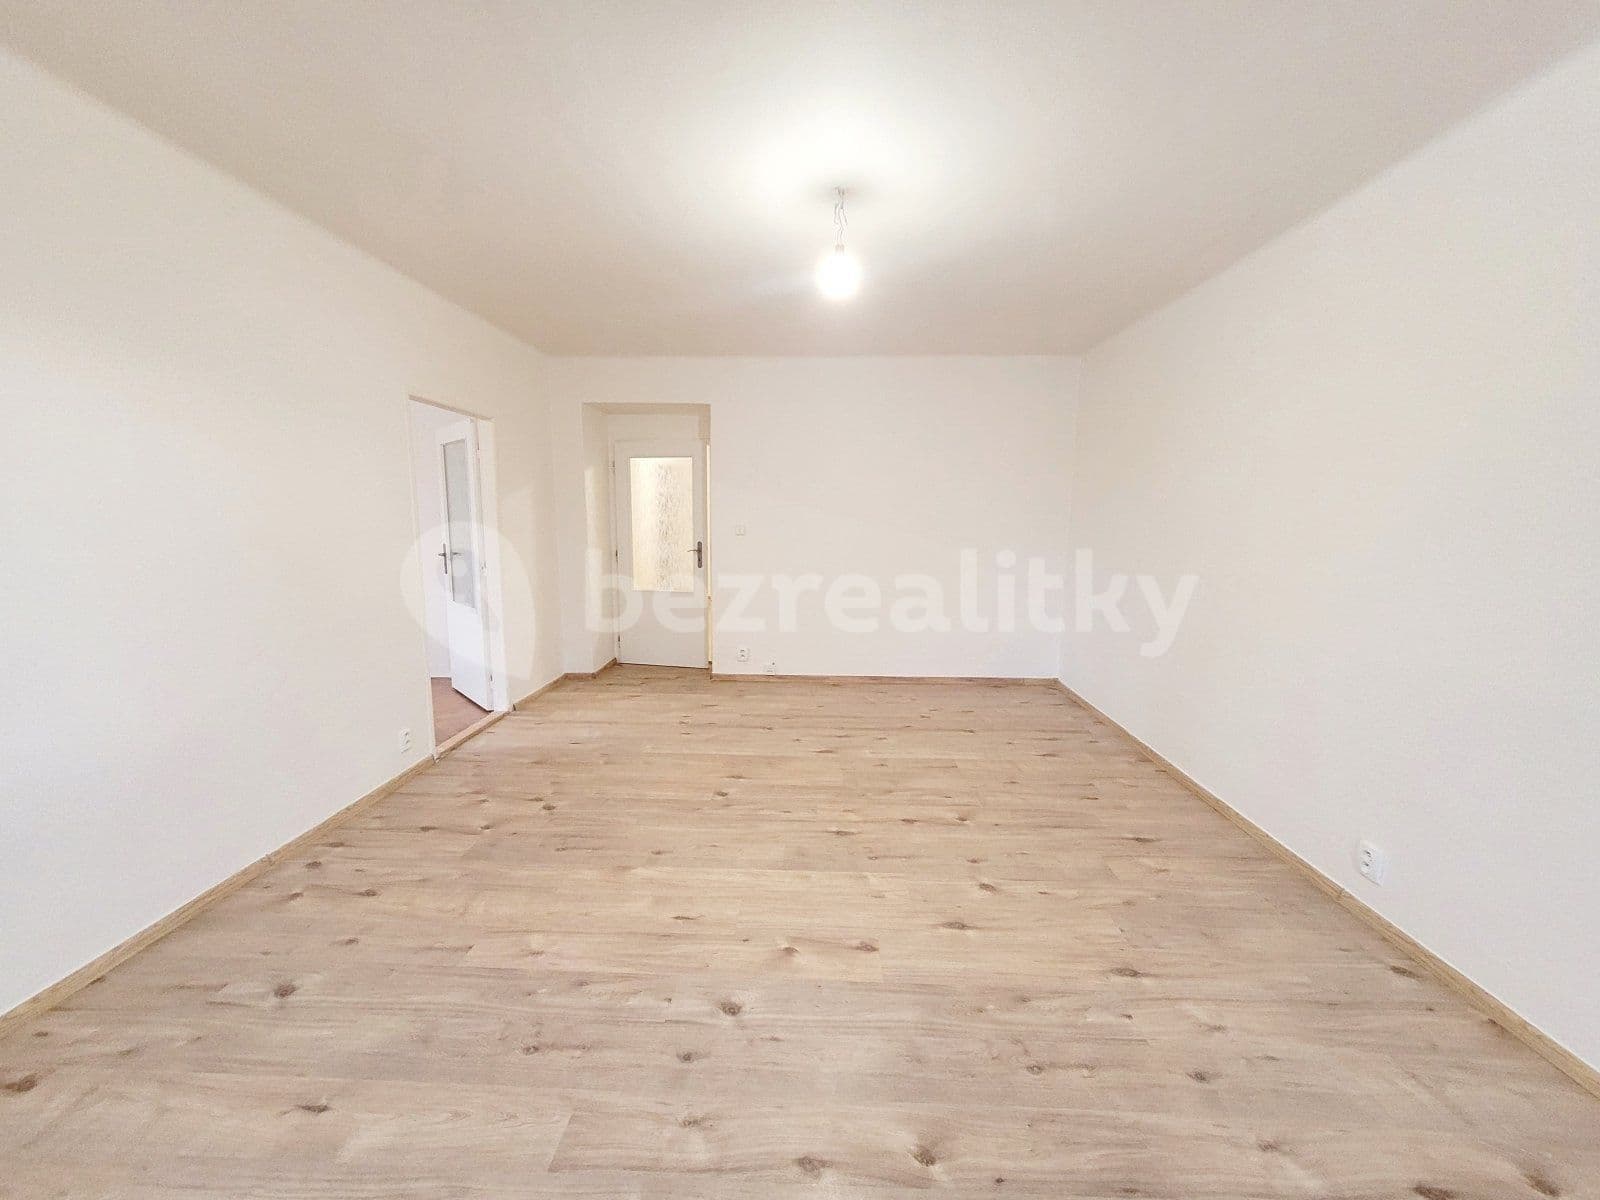 3 bedroom flat to rent, 86 m², nám. T. G. Masaryka, Havířov, Moravskoslezský Region